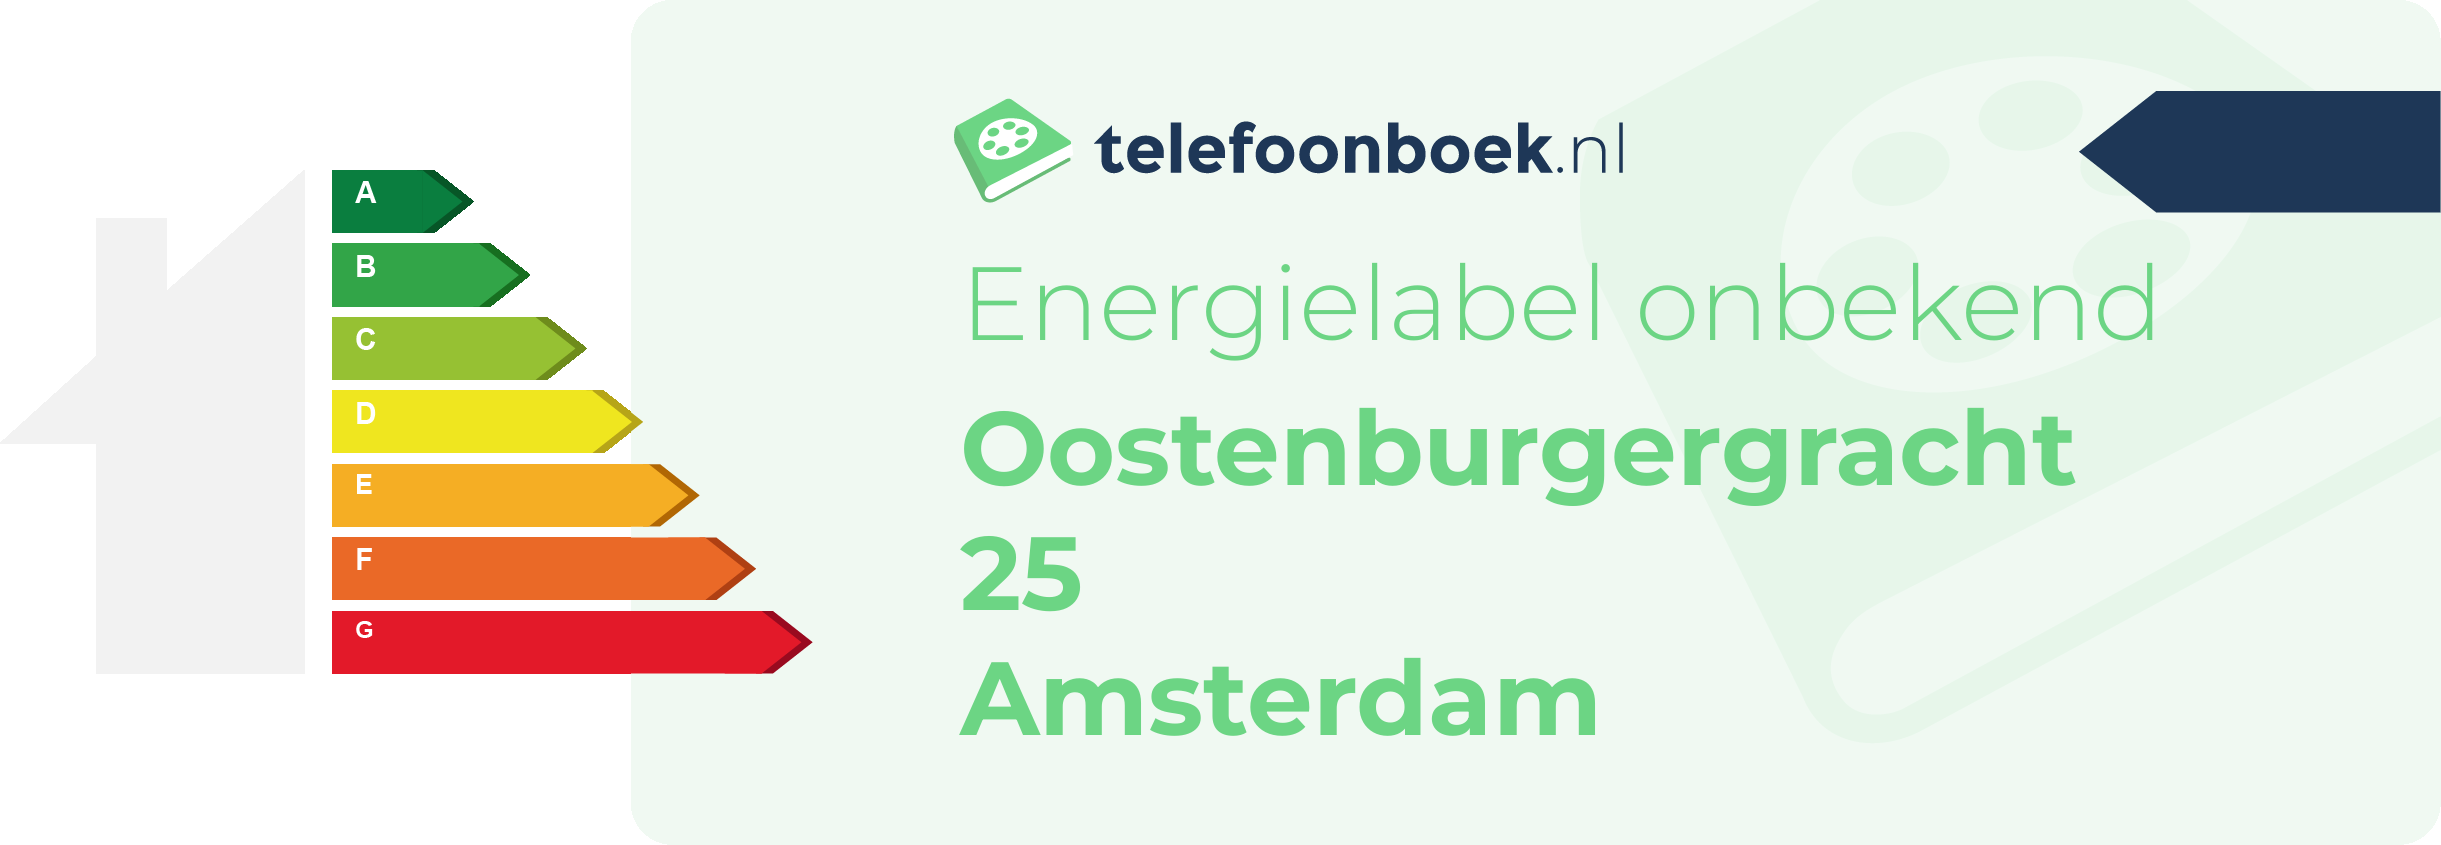 Energielabel Oostenburgergracht 25 Amsterdam